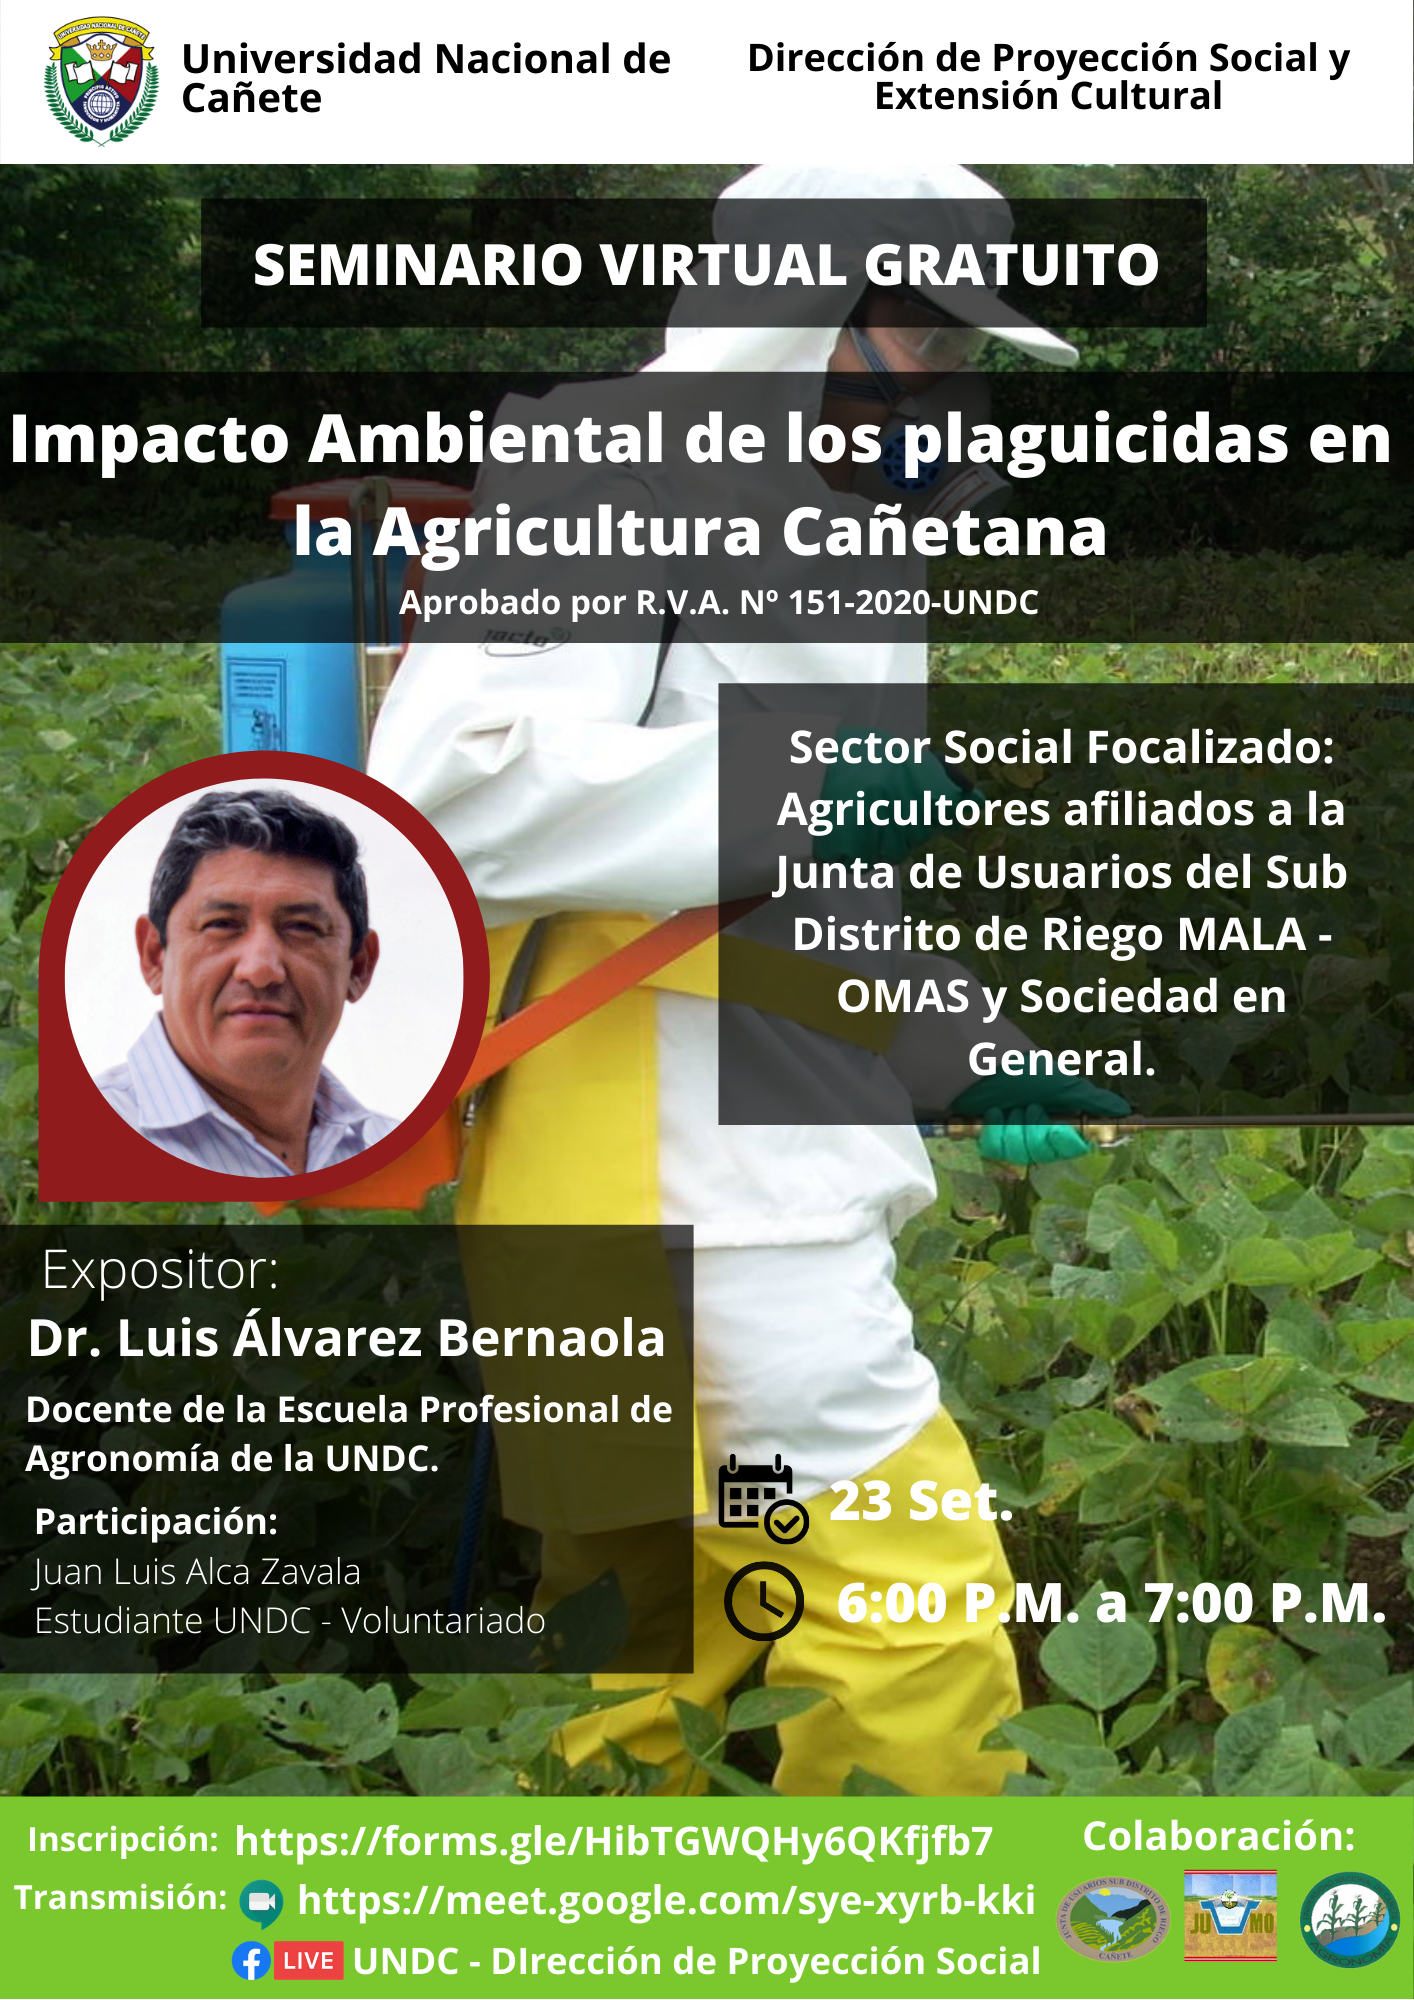 Impacto Ambiental de los Plaguicidas en la Agricultura Cañetana.